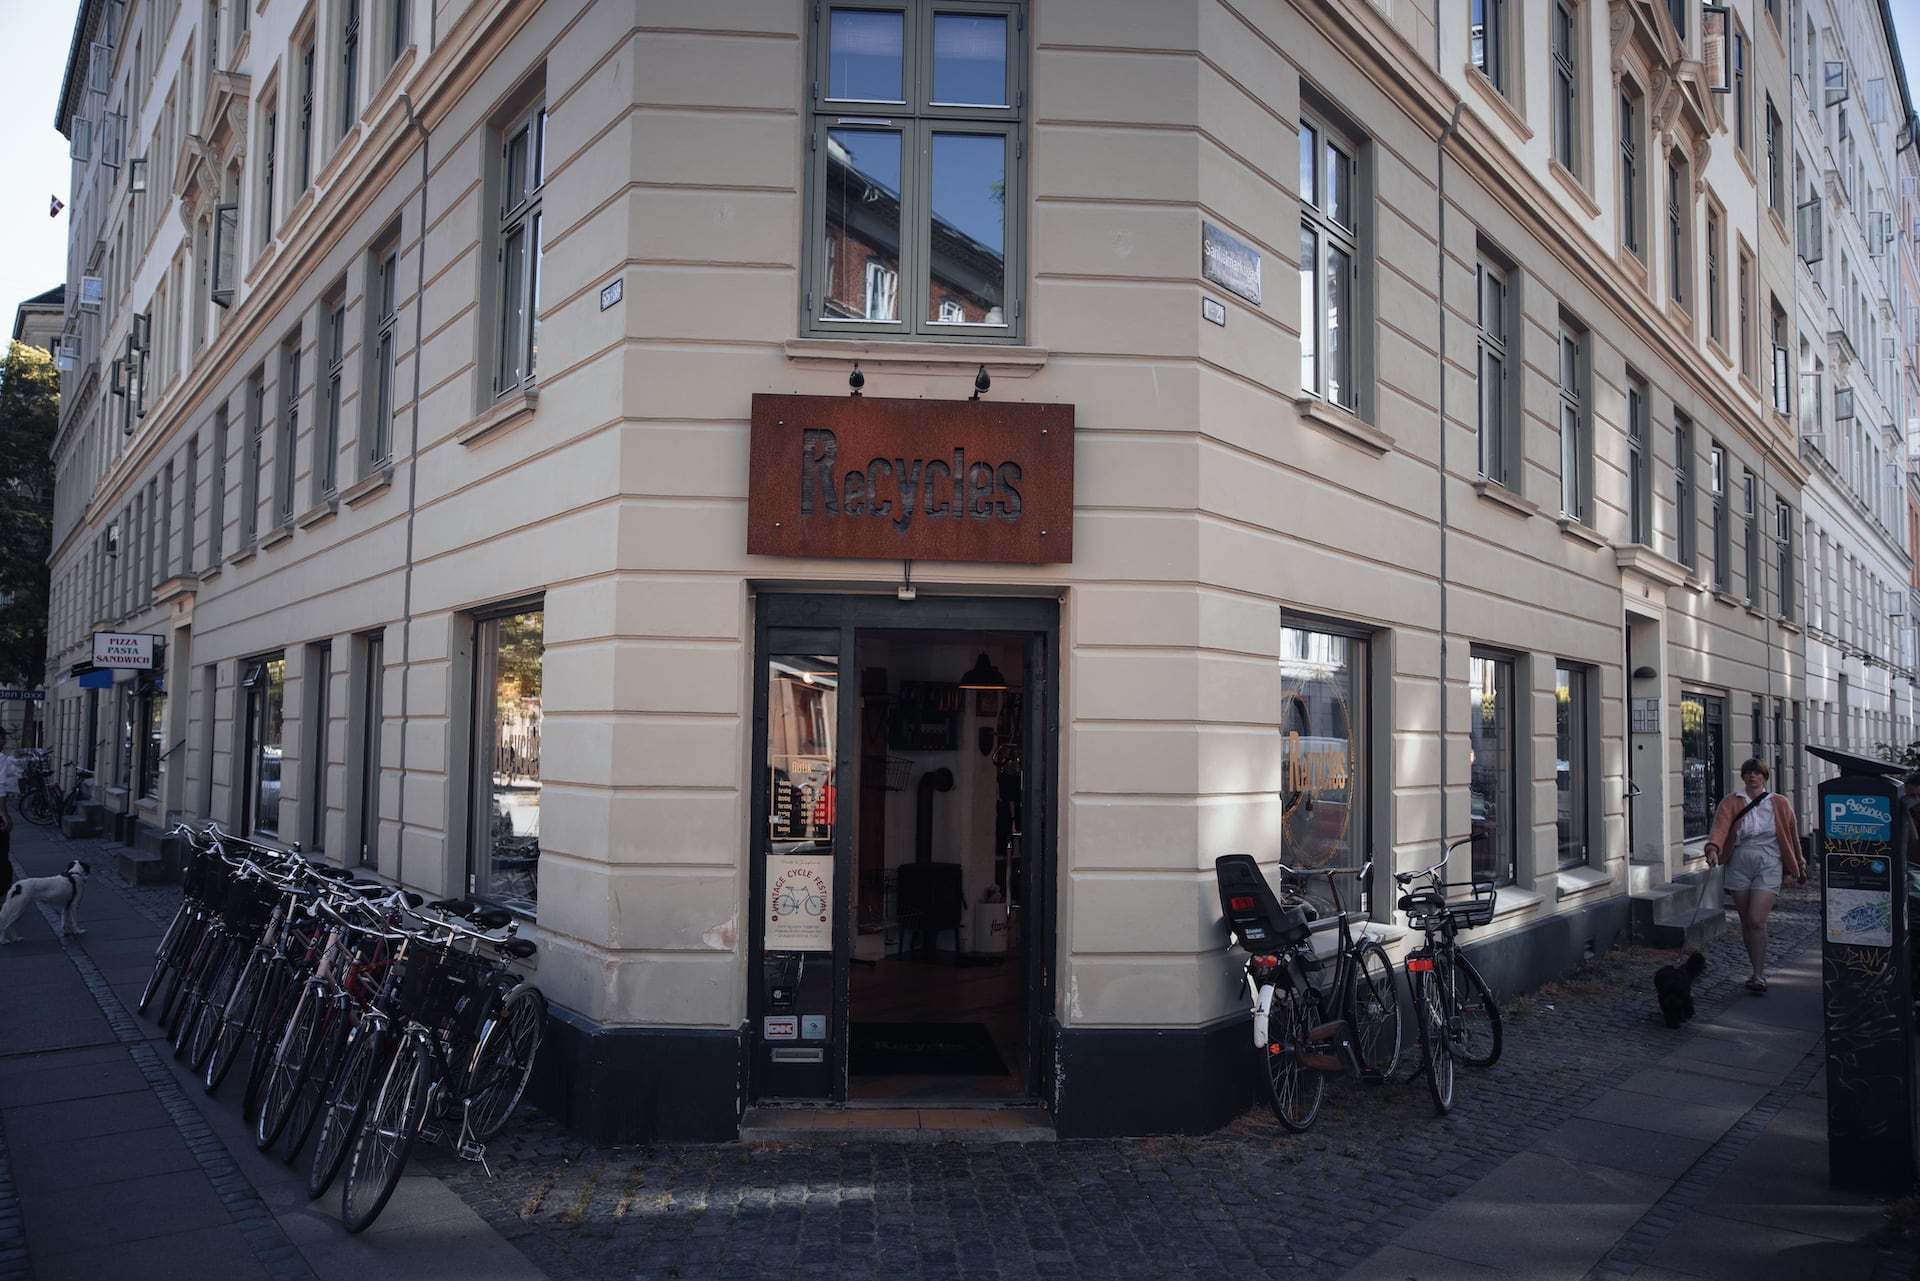 Eingang Fahrradladen recycles in Kopenhagen